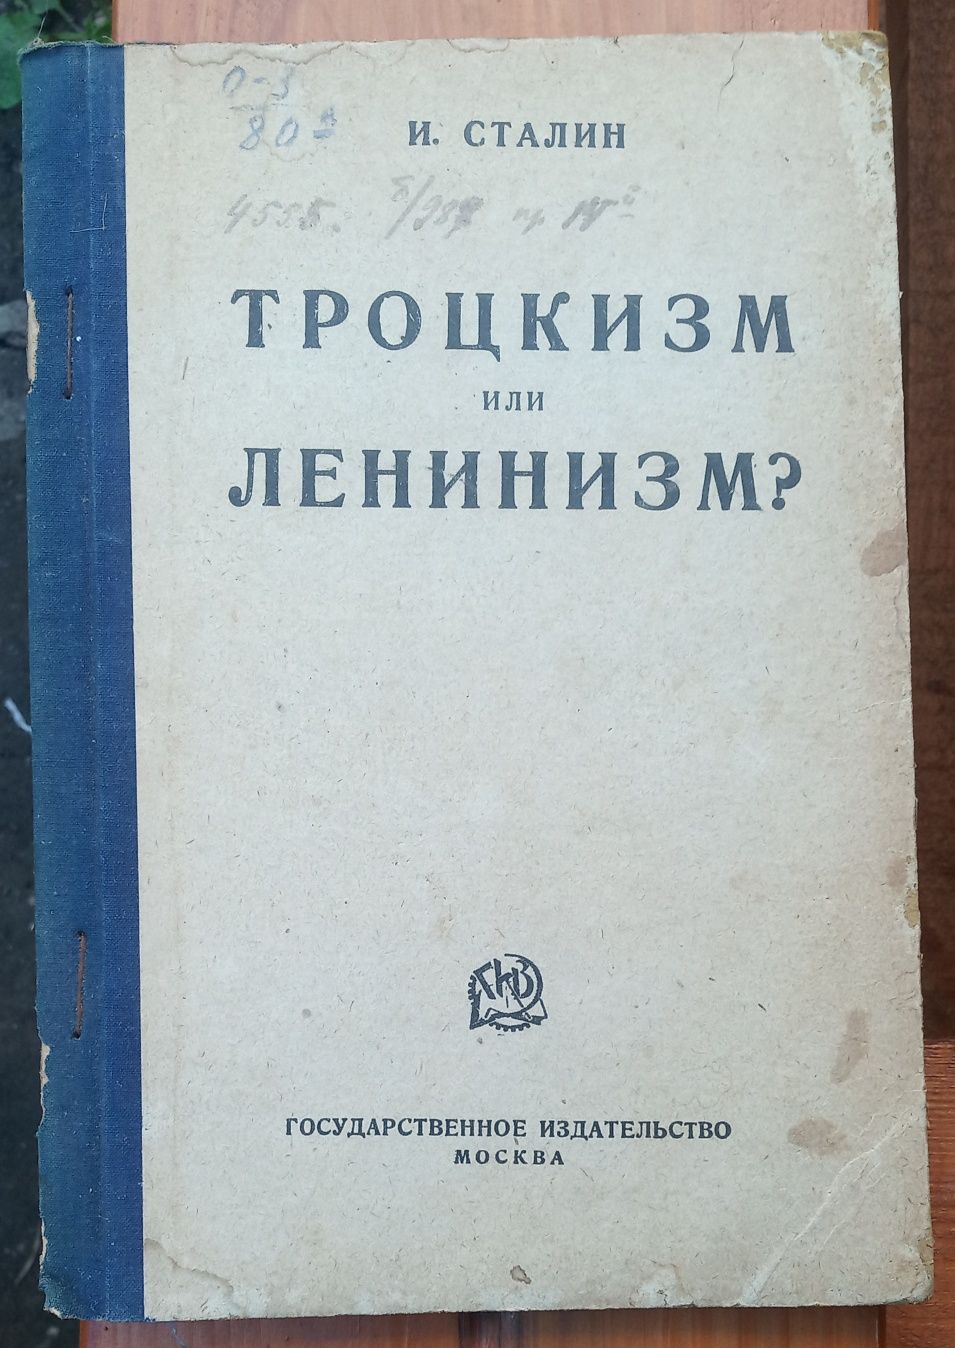 И.Сталин книга Троцкизм или Ленинизм